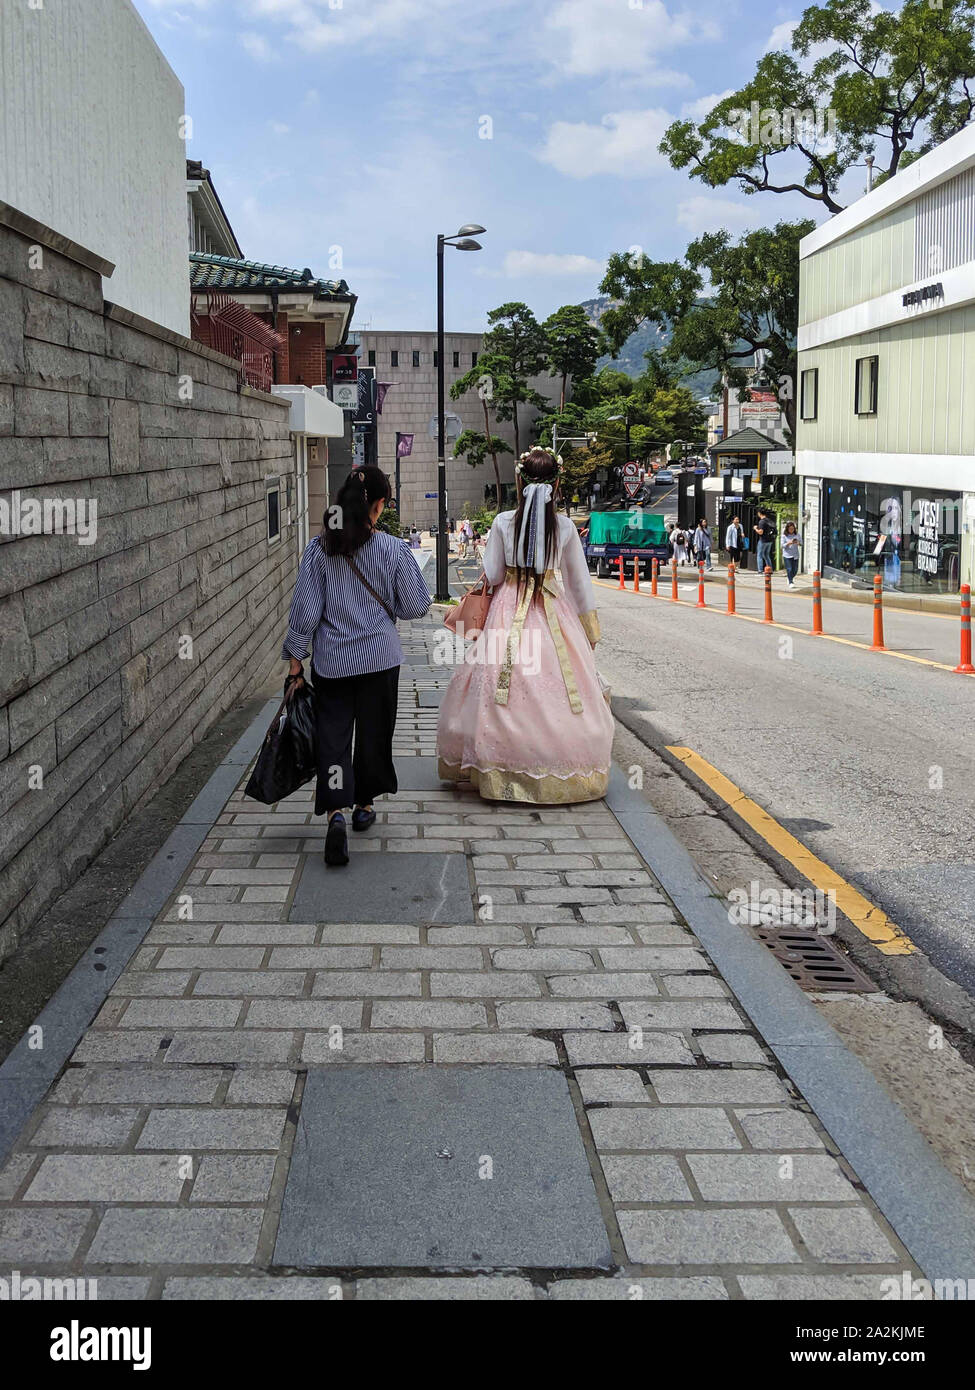 SEPT. 19, 2019-Séoul CORÉE DU SUD : Yougn femme vêtue avec une robe hanbok traditionnel coréen à marcher avec une femme portant un des vêtements modernes. Promenade Banque D'Images